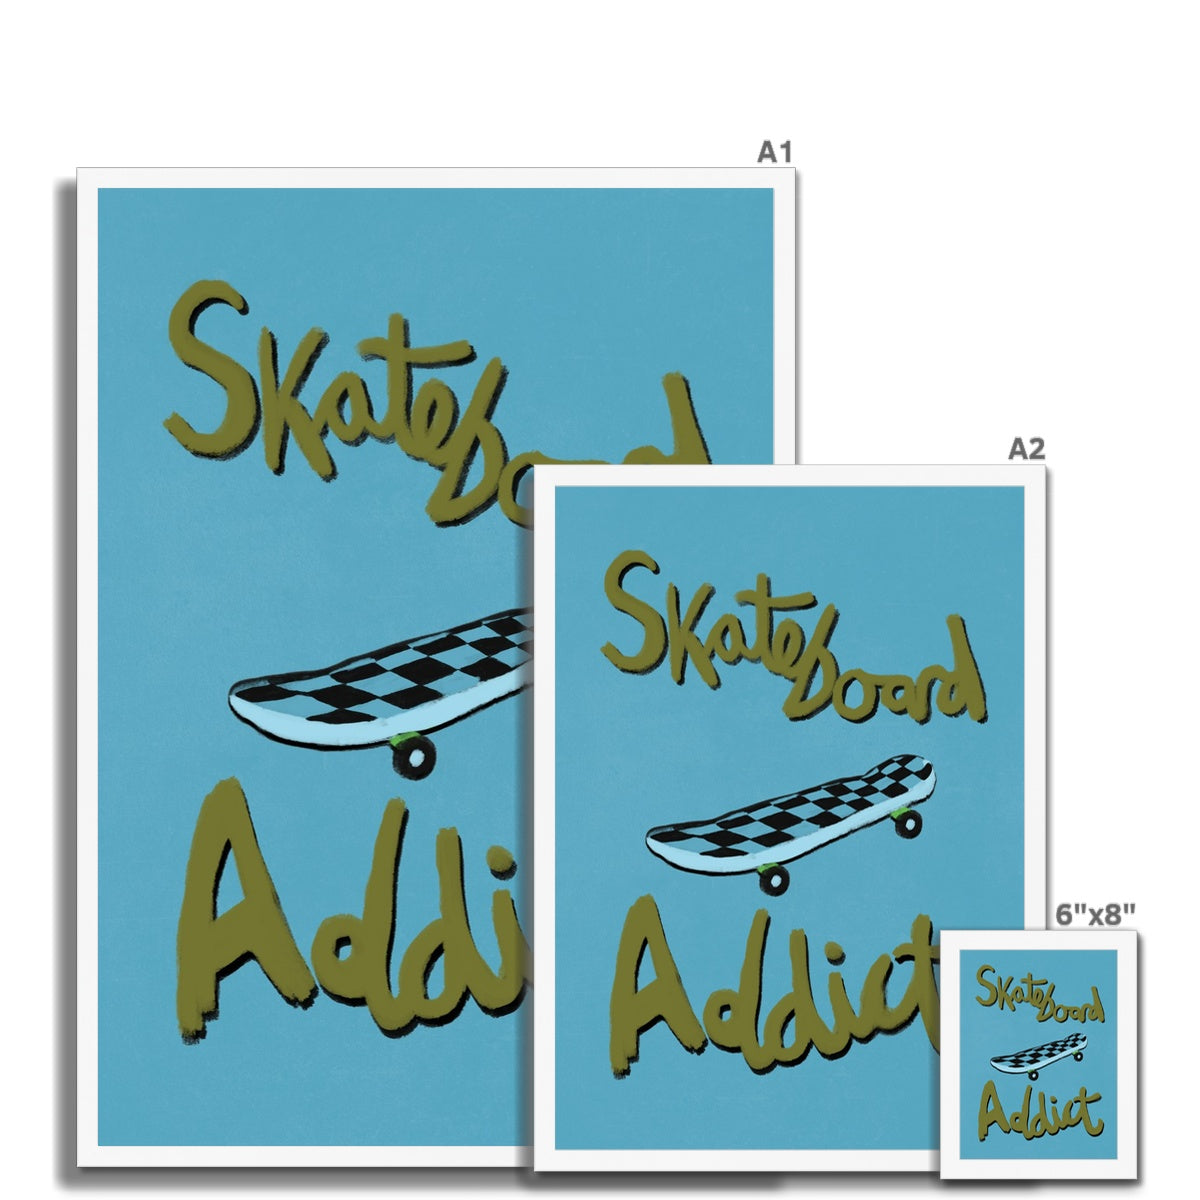 Skateboard Addict - Olive Green, Blue Framed Print